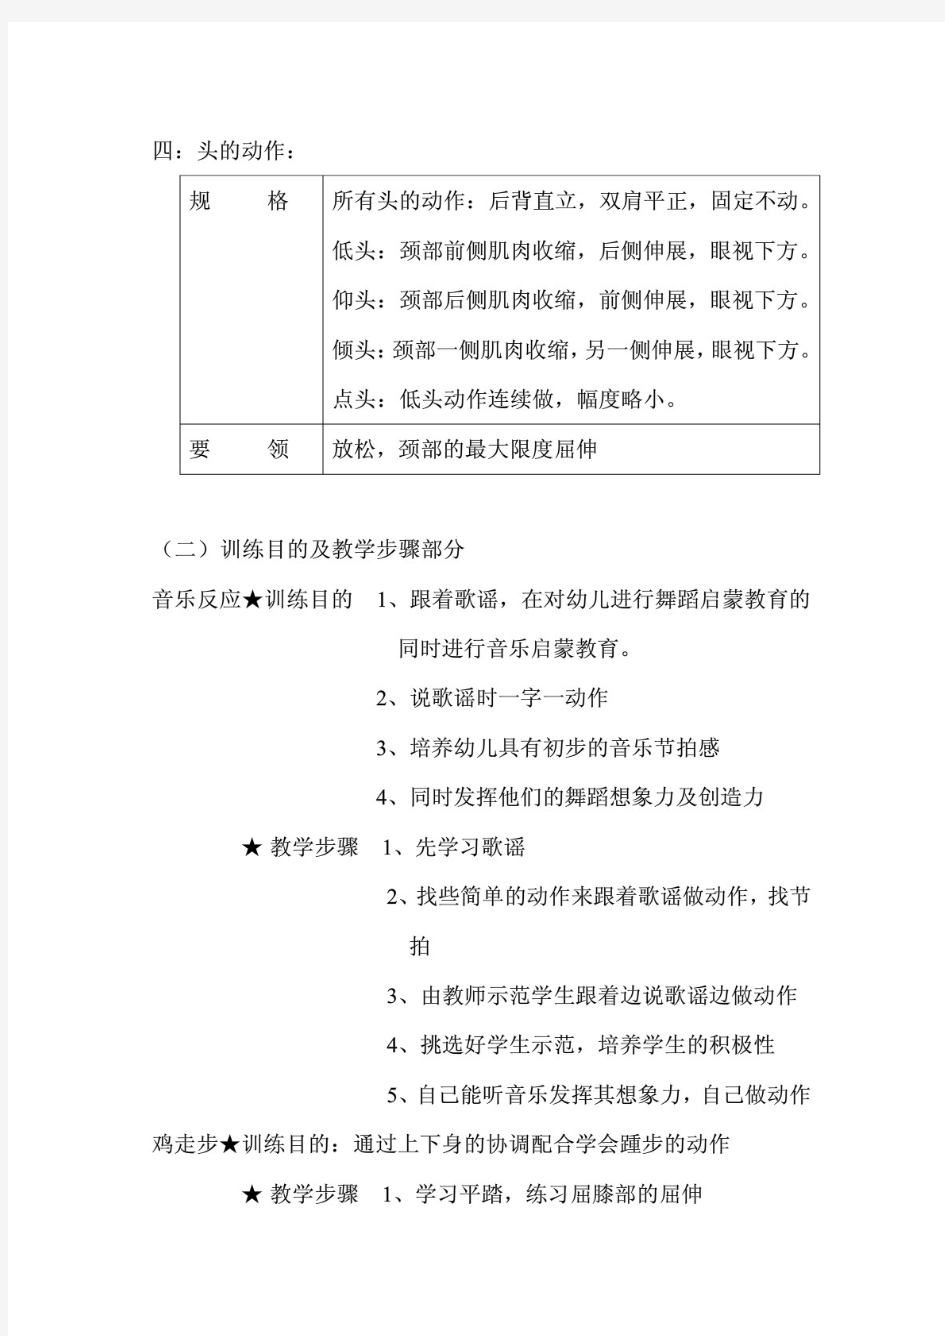 中国舞等级考试教材教学法第1-8级笔记 PDF